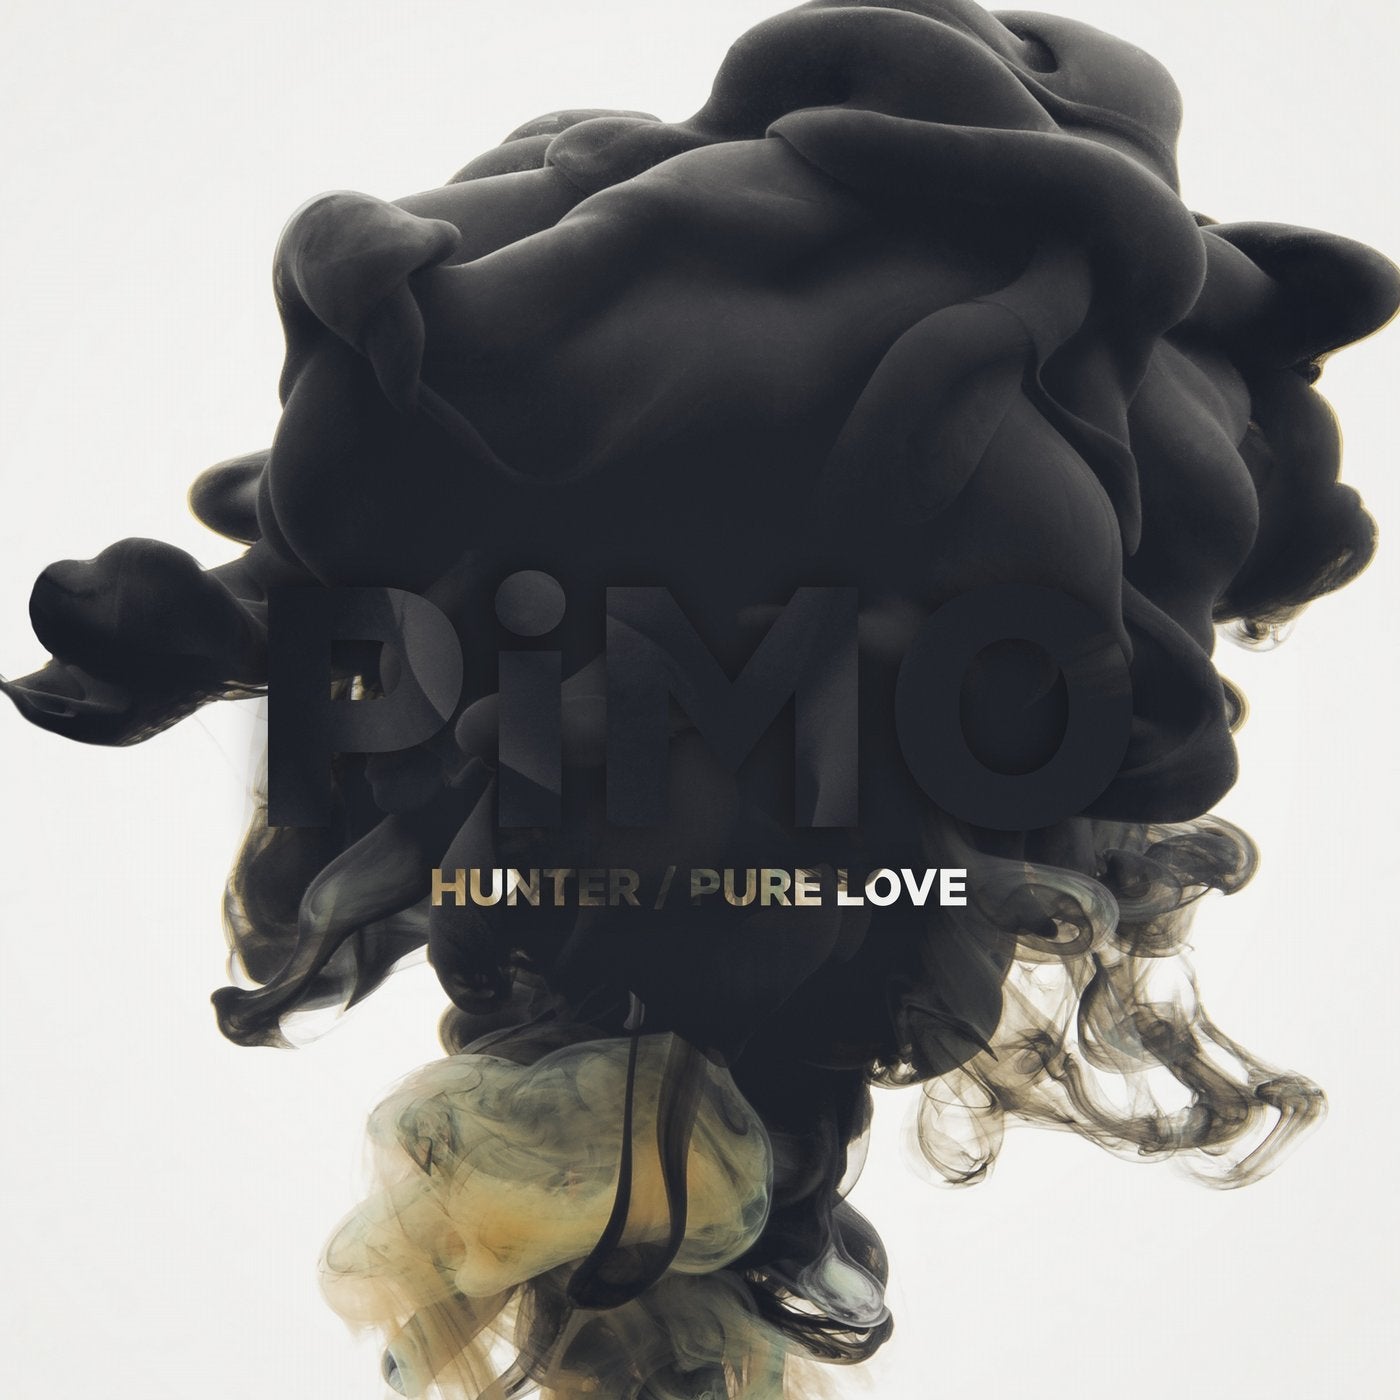 Hunter / Pure Love